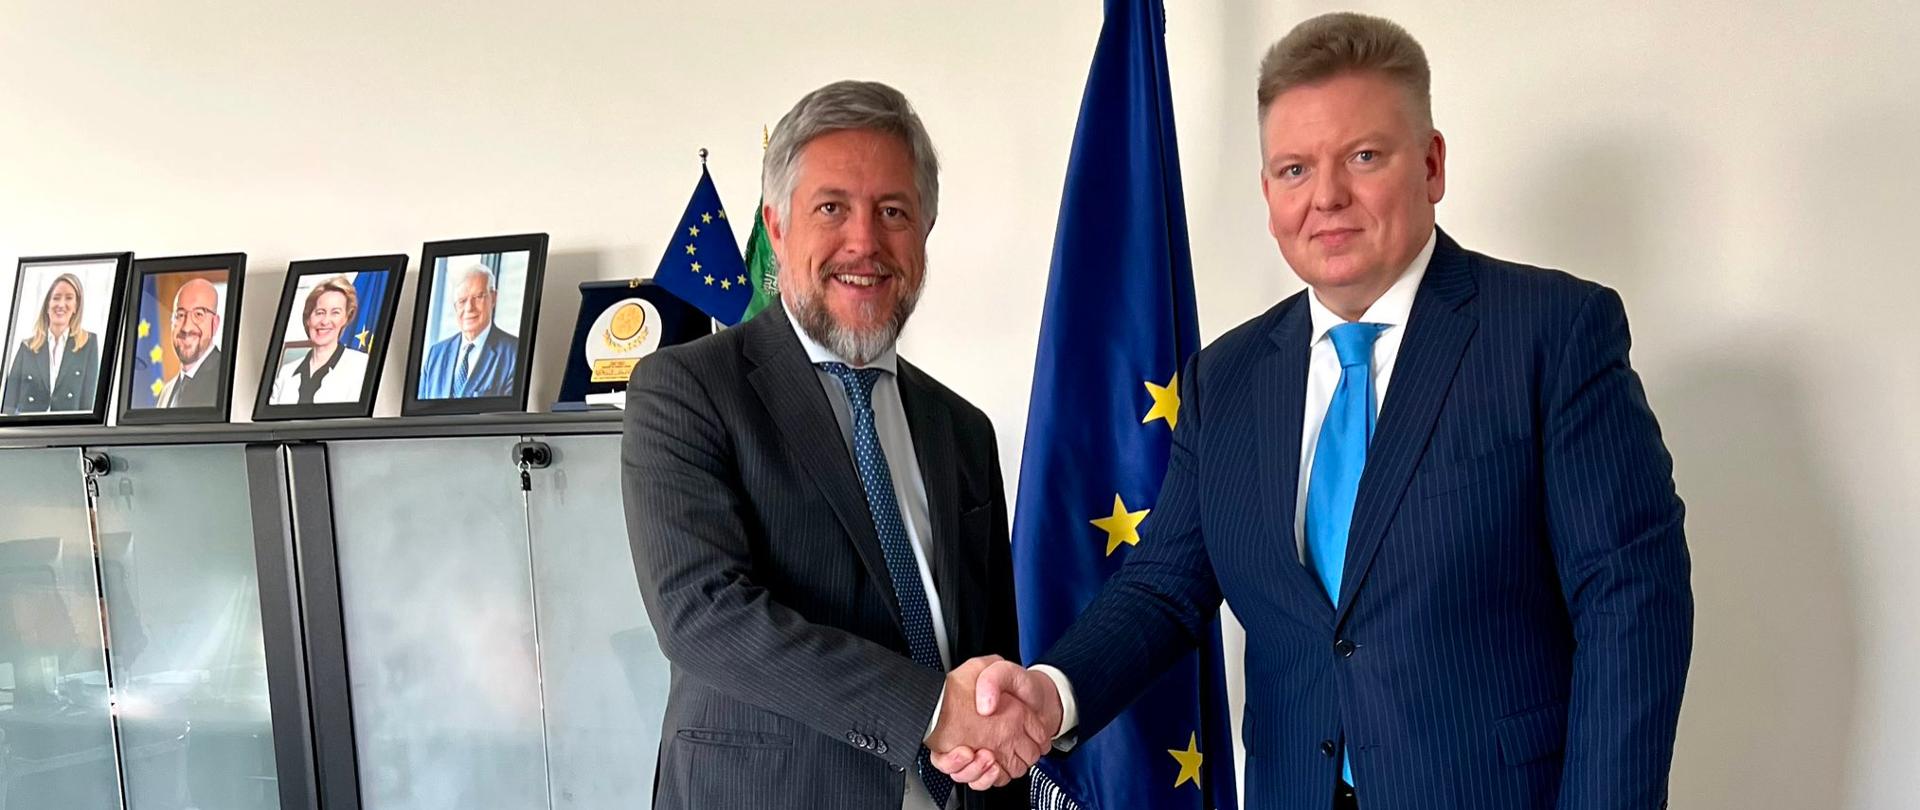 With EU Ambassador